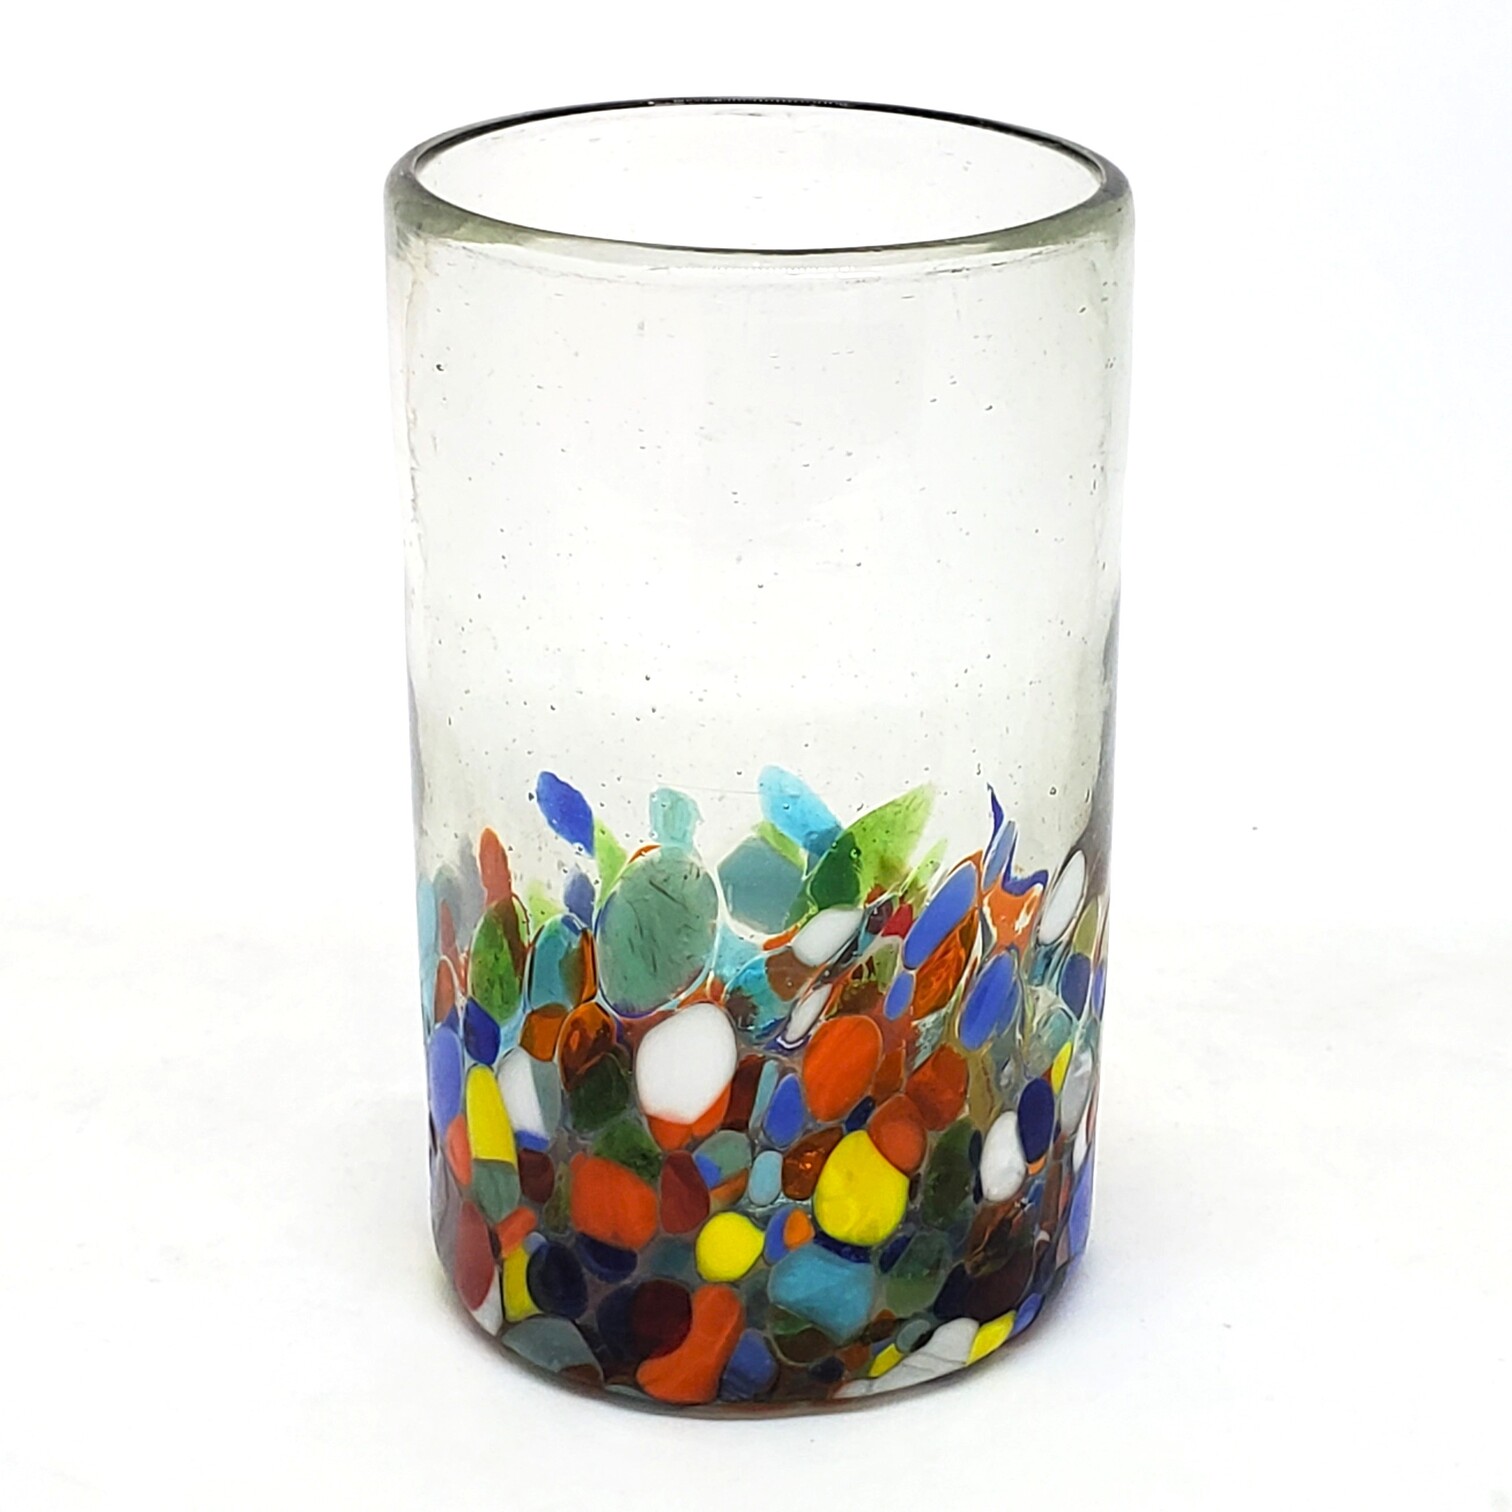 Ofertas / vasos grandes 'Cristal & Confeti' / Deje entrar a la primavera en su casa con �ste colorido juego de vasos. El decorado con vidrio multicolor los hace resaltar en cualquier lugar.